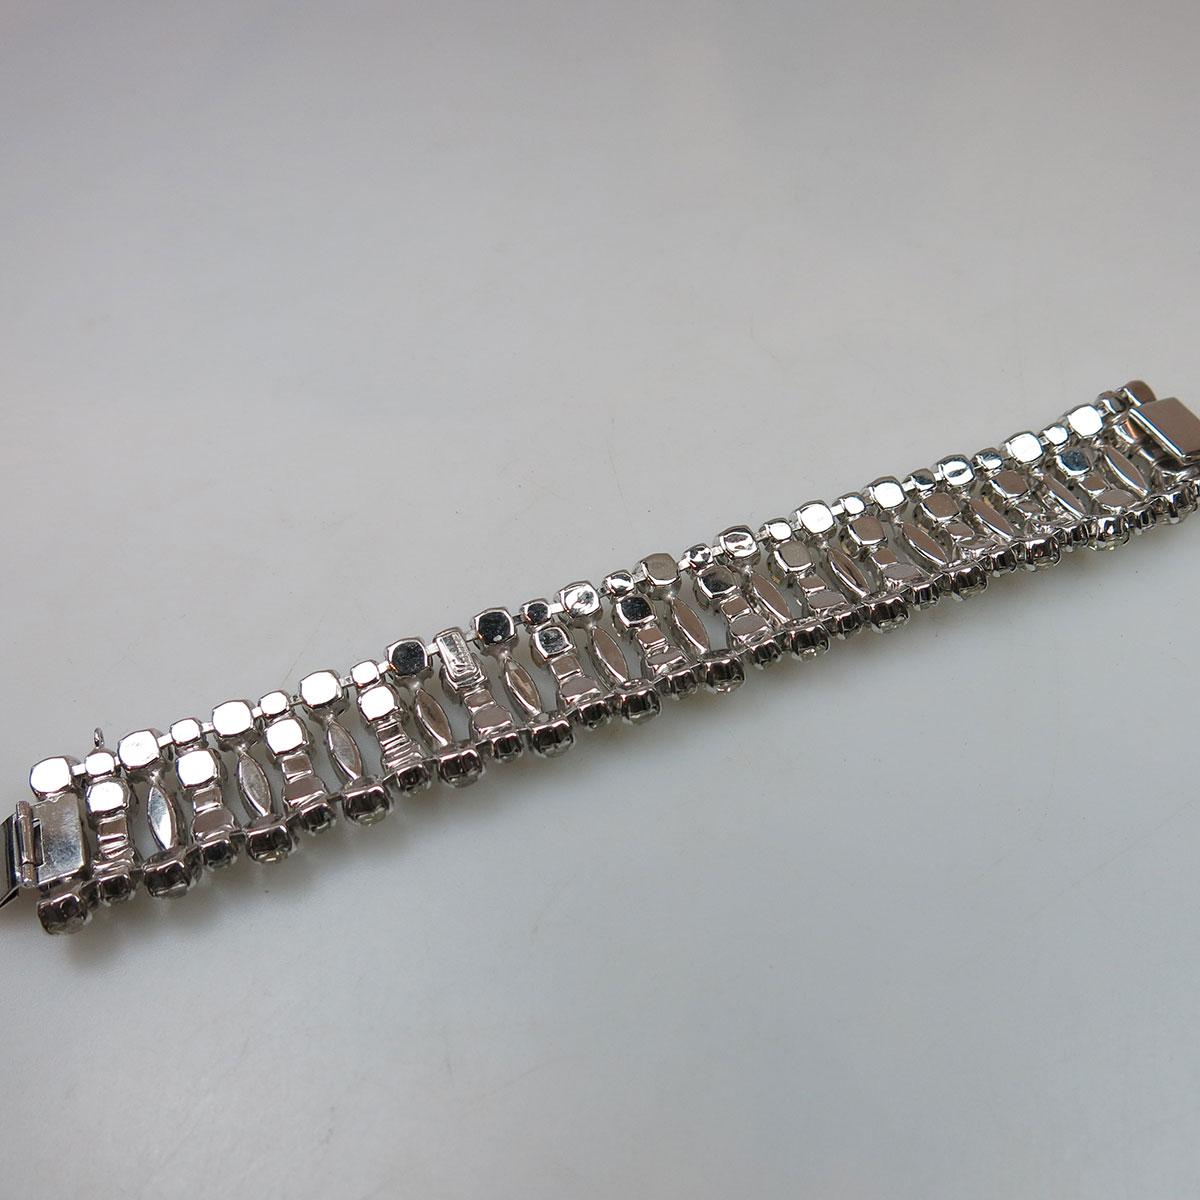 Sherman Silver Tone Metal Strap Bracelet